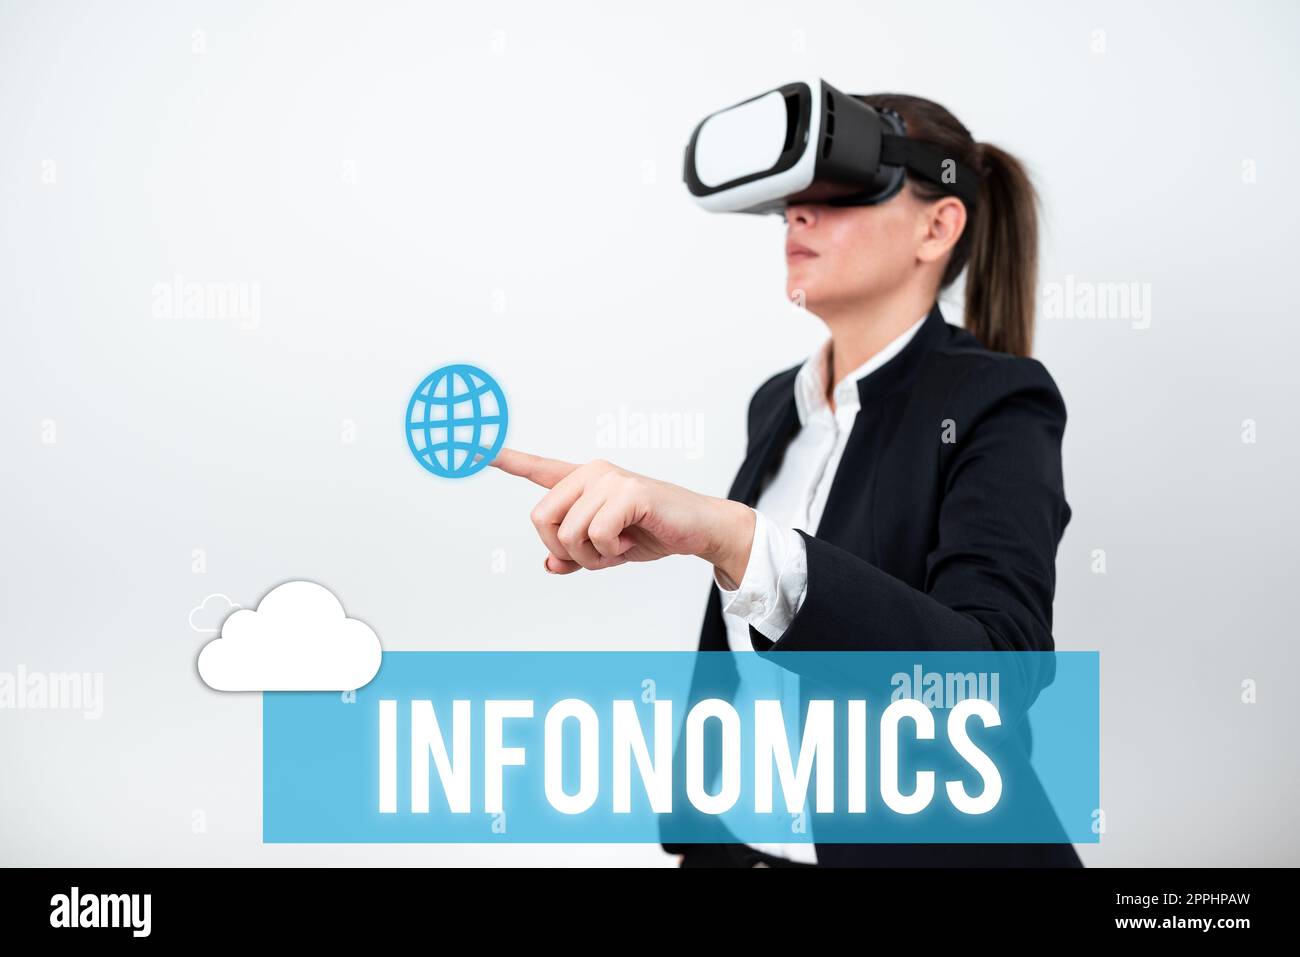 Infonomics anzeigen. Wort für ein visuelles Bild, das zur Darstellung von Informationen oder Daten verwendet wird Stockfoto